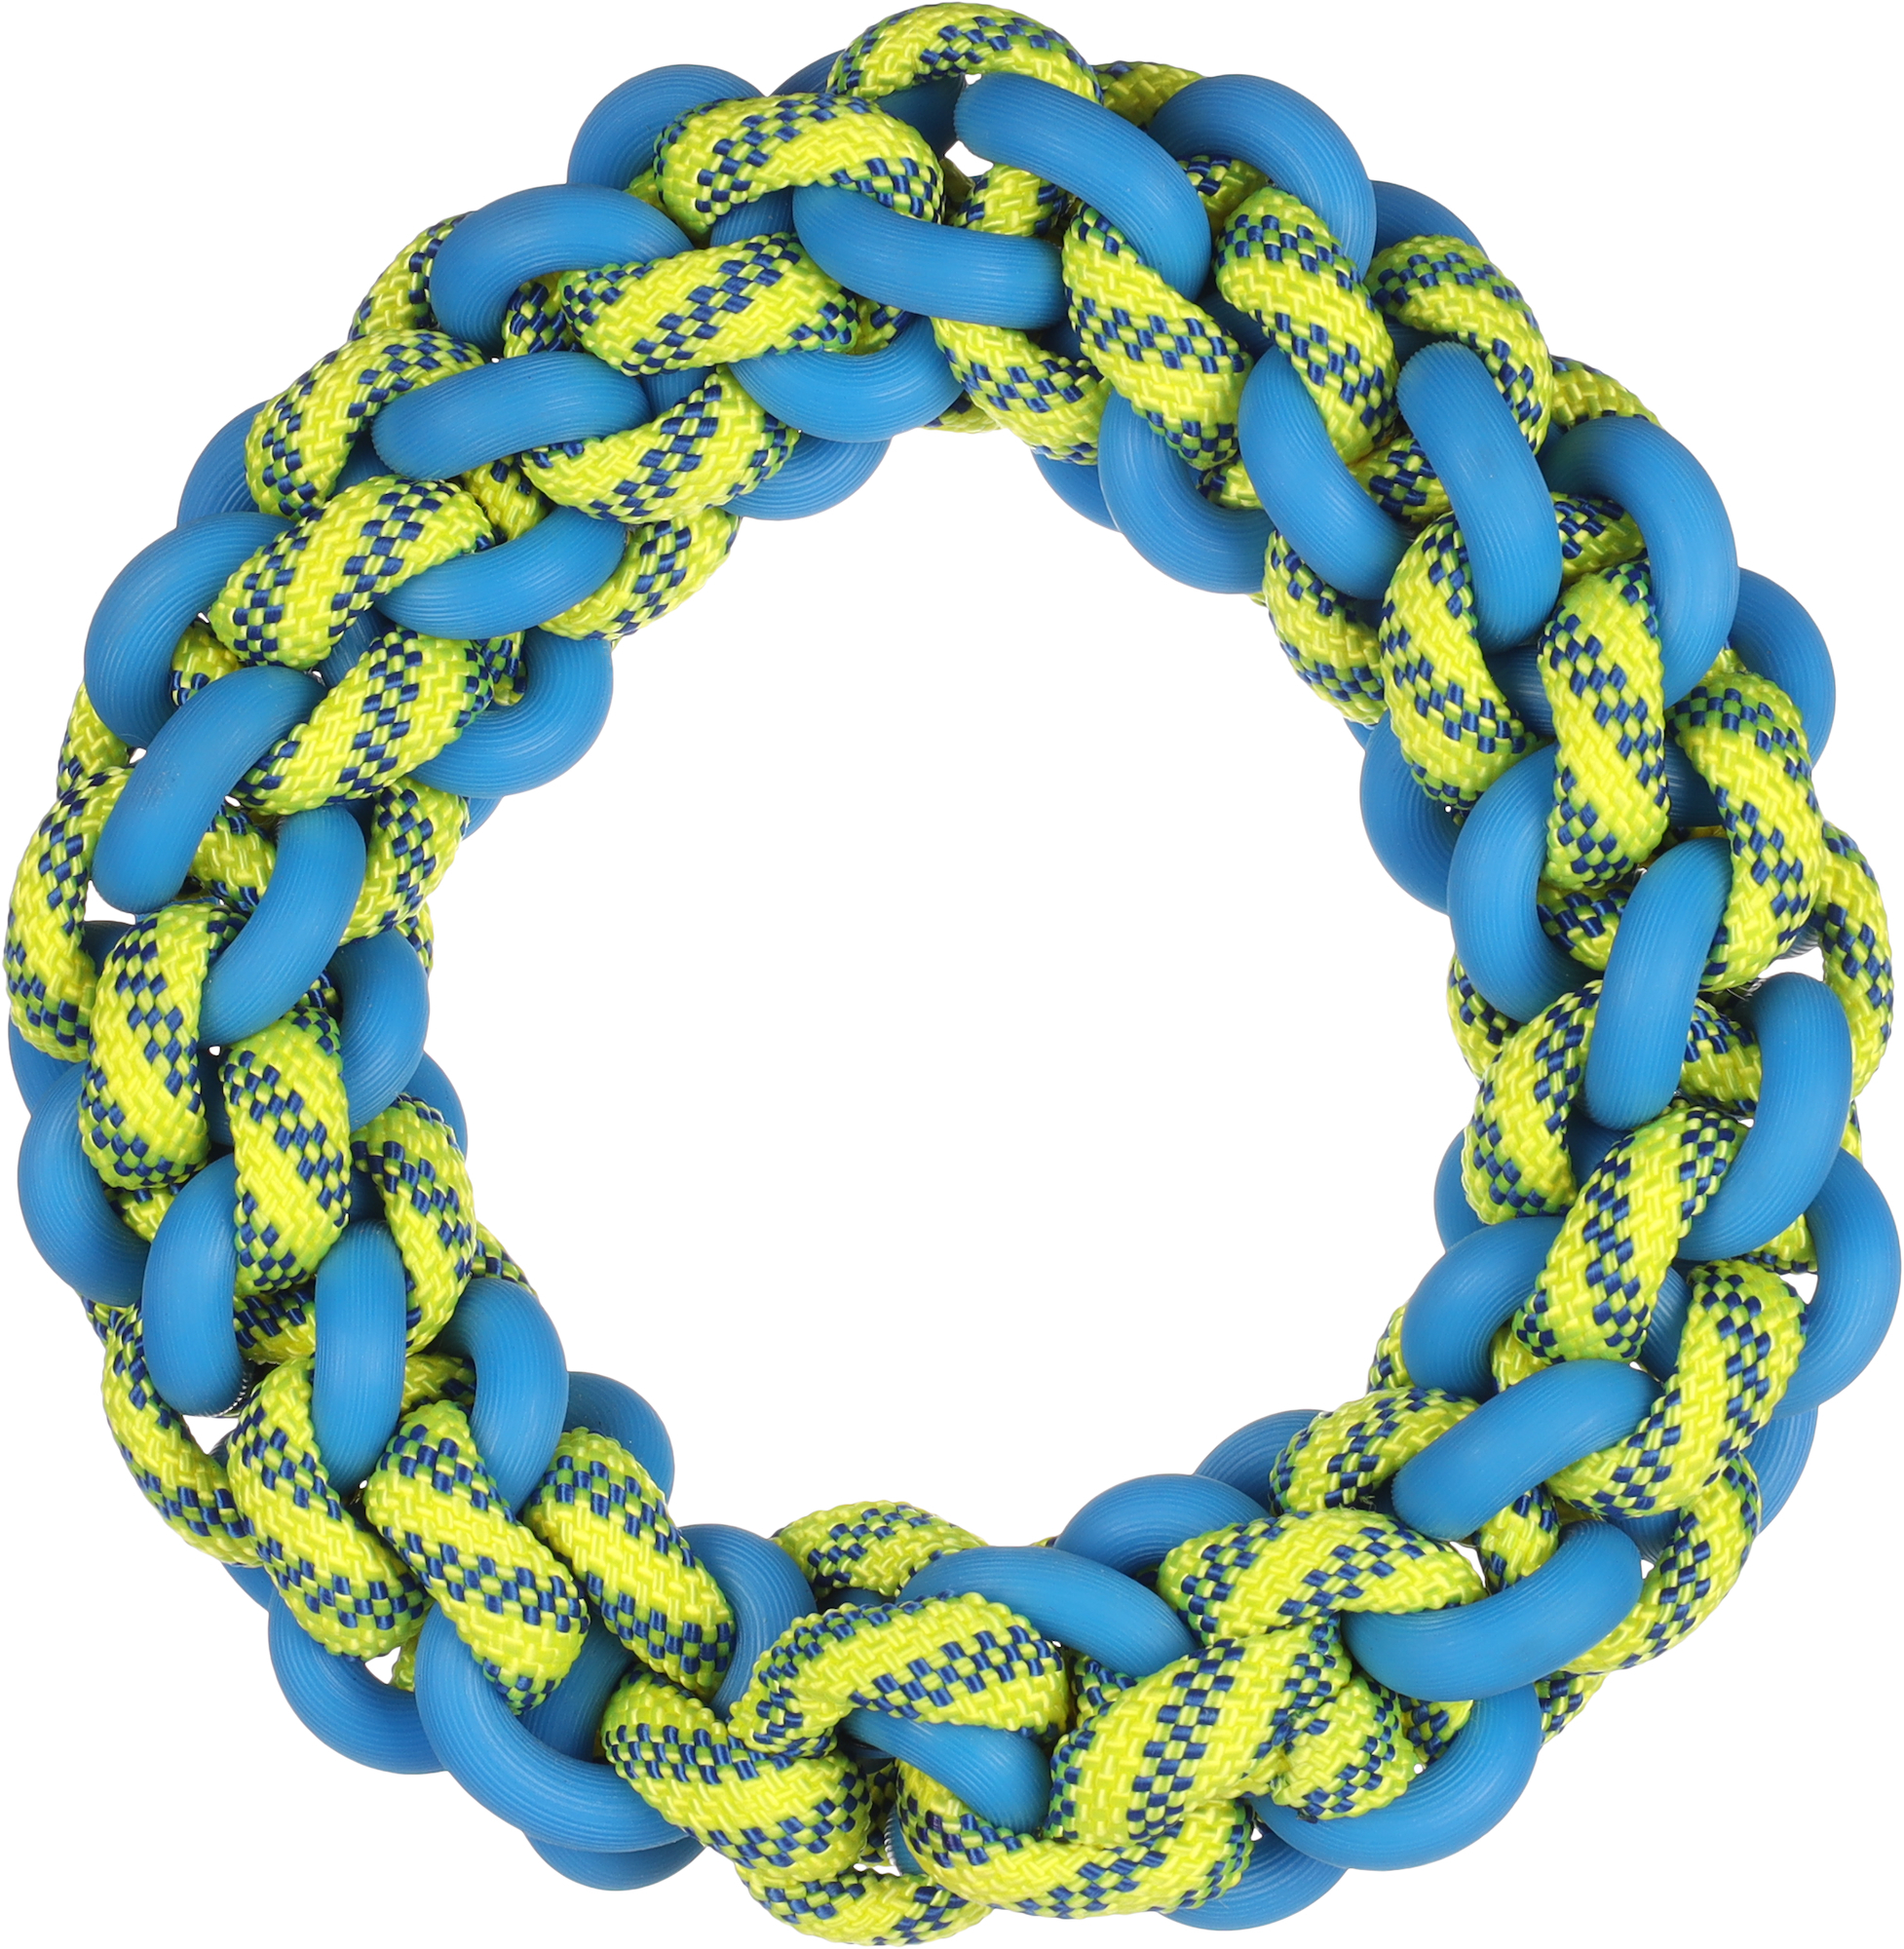 Gioco per cane Tofla anello blu/giallo in gomma e nylon resistente